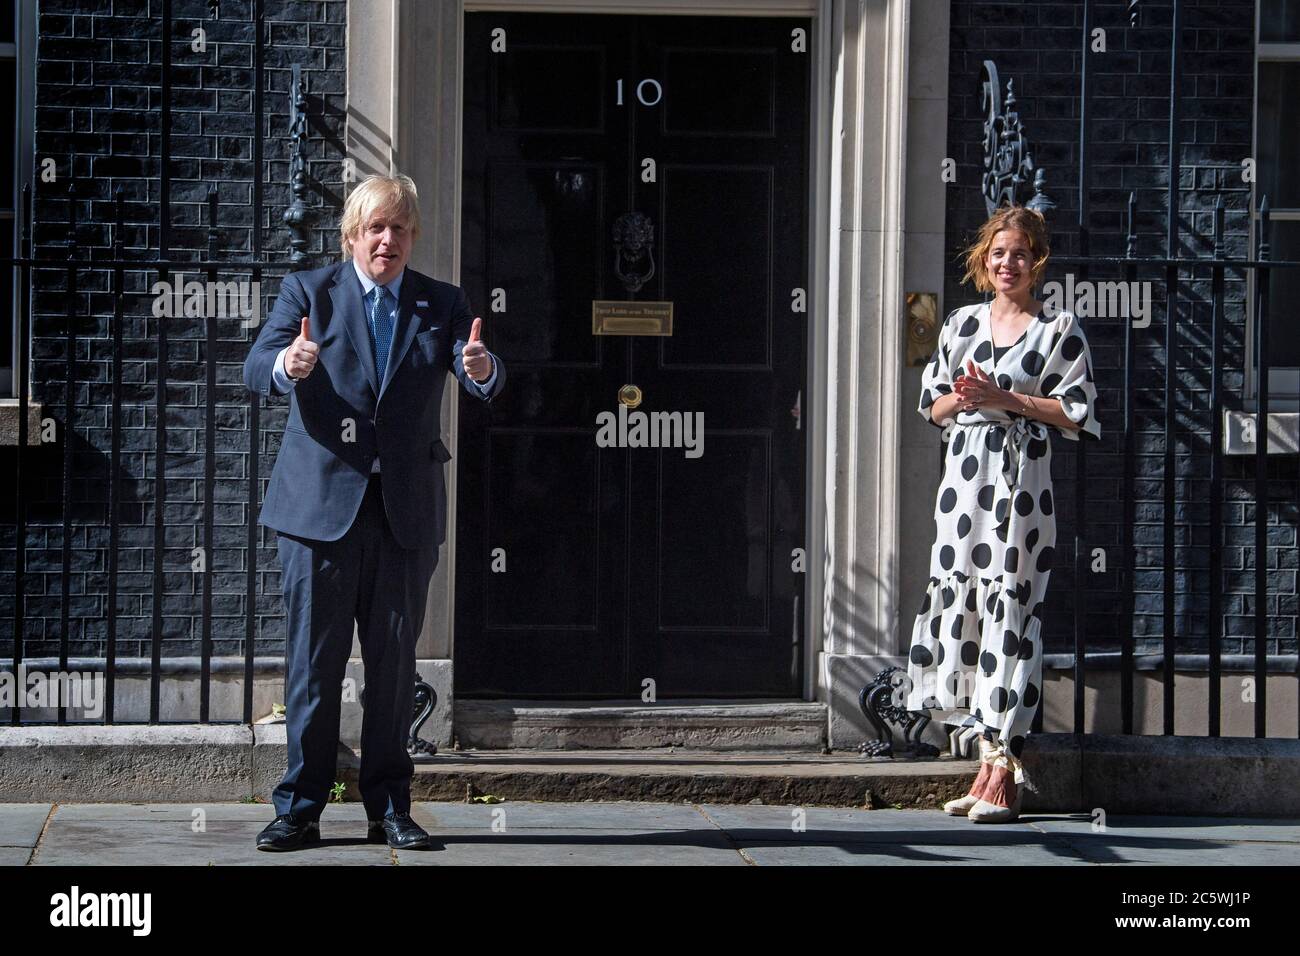 Nell'ambito delle celebrazioni per il compleanno dell'NHS, il primo ministro Boris Johnson e Annemarie Plas, fondatore di Clap per i nostri carers, fuori 10 Downing Street, Londra, dopo aver partecipato alla pausa per gli applausi per salutare il 72° compleanno dell'NHS. Foto Stock